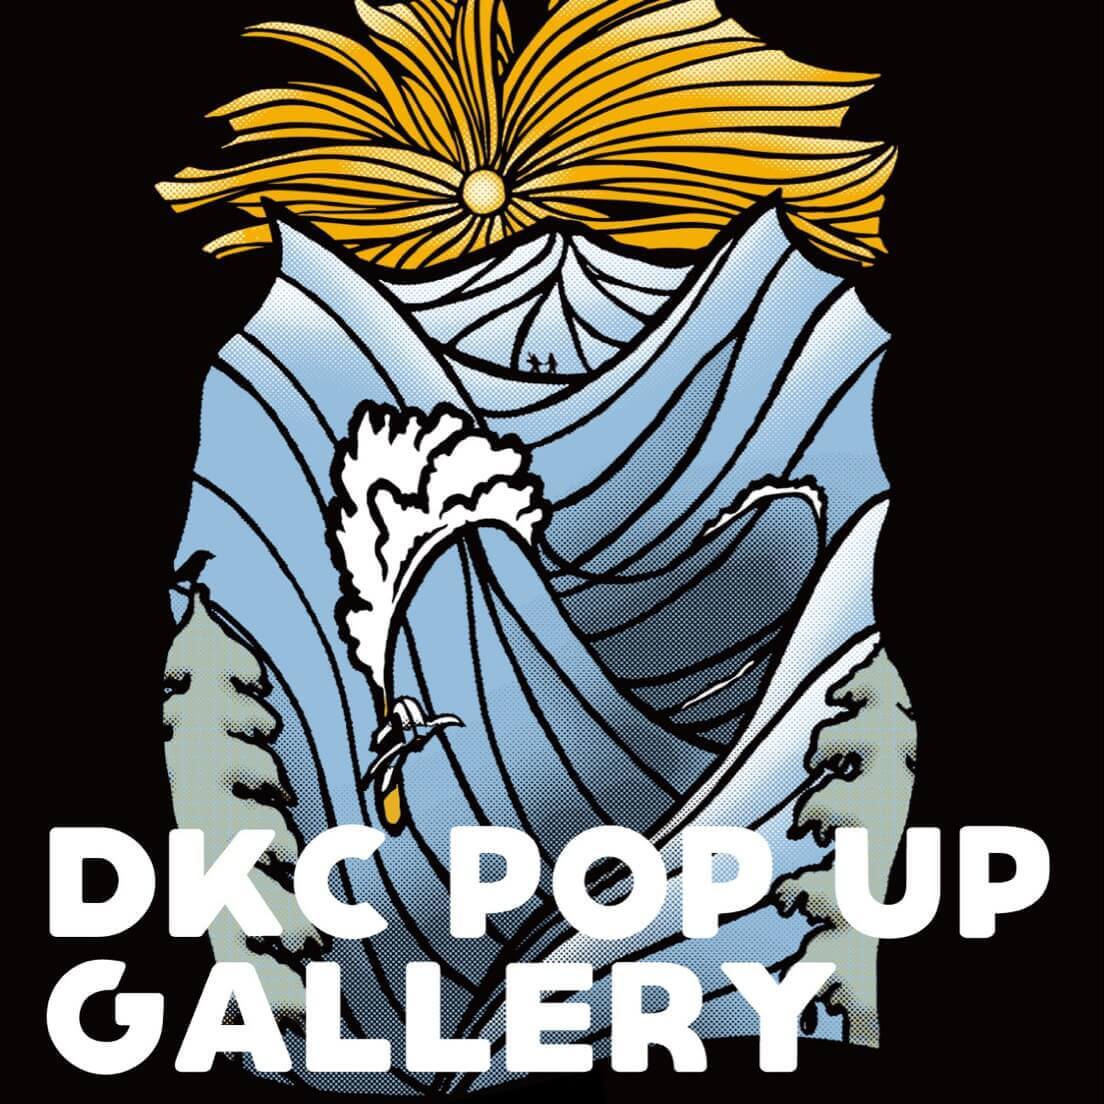 札幌パルコの『ニューカルチャー総力祭』-DKC POP UP GALLERY